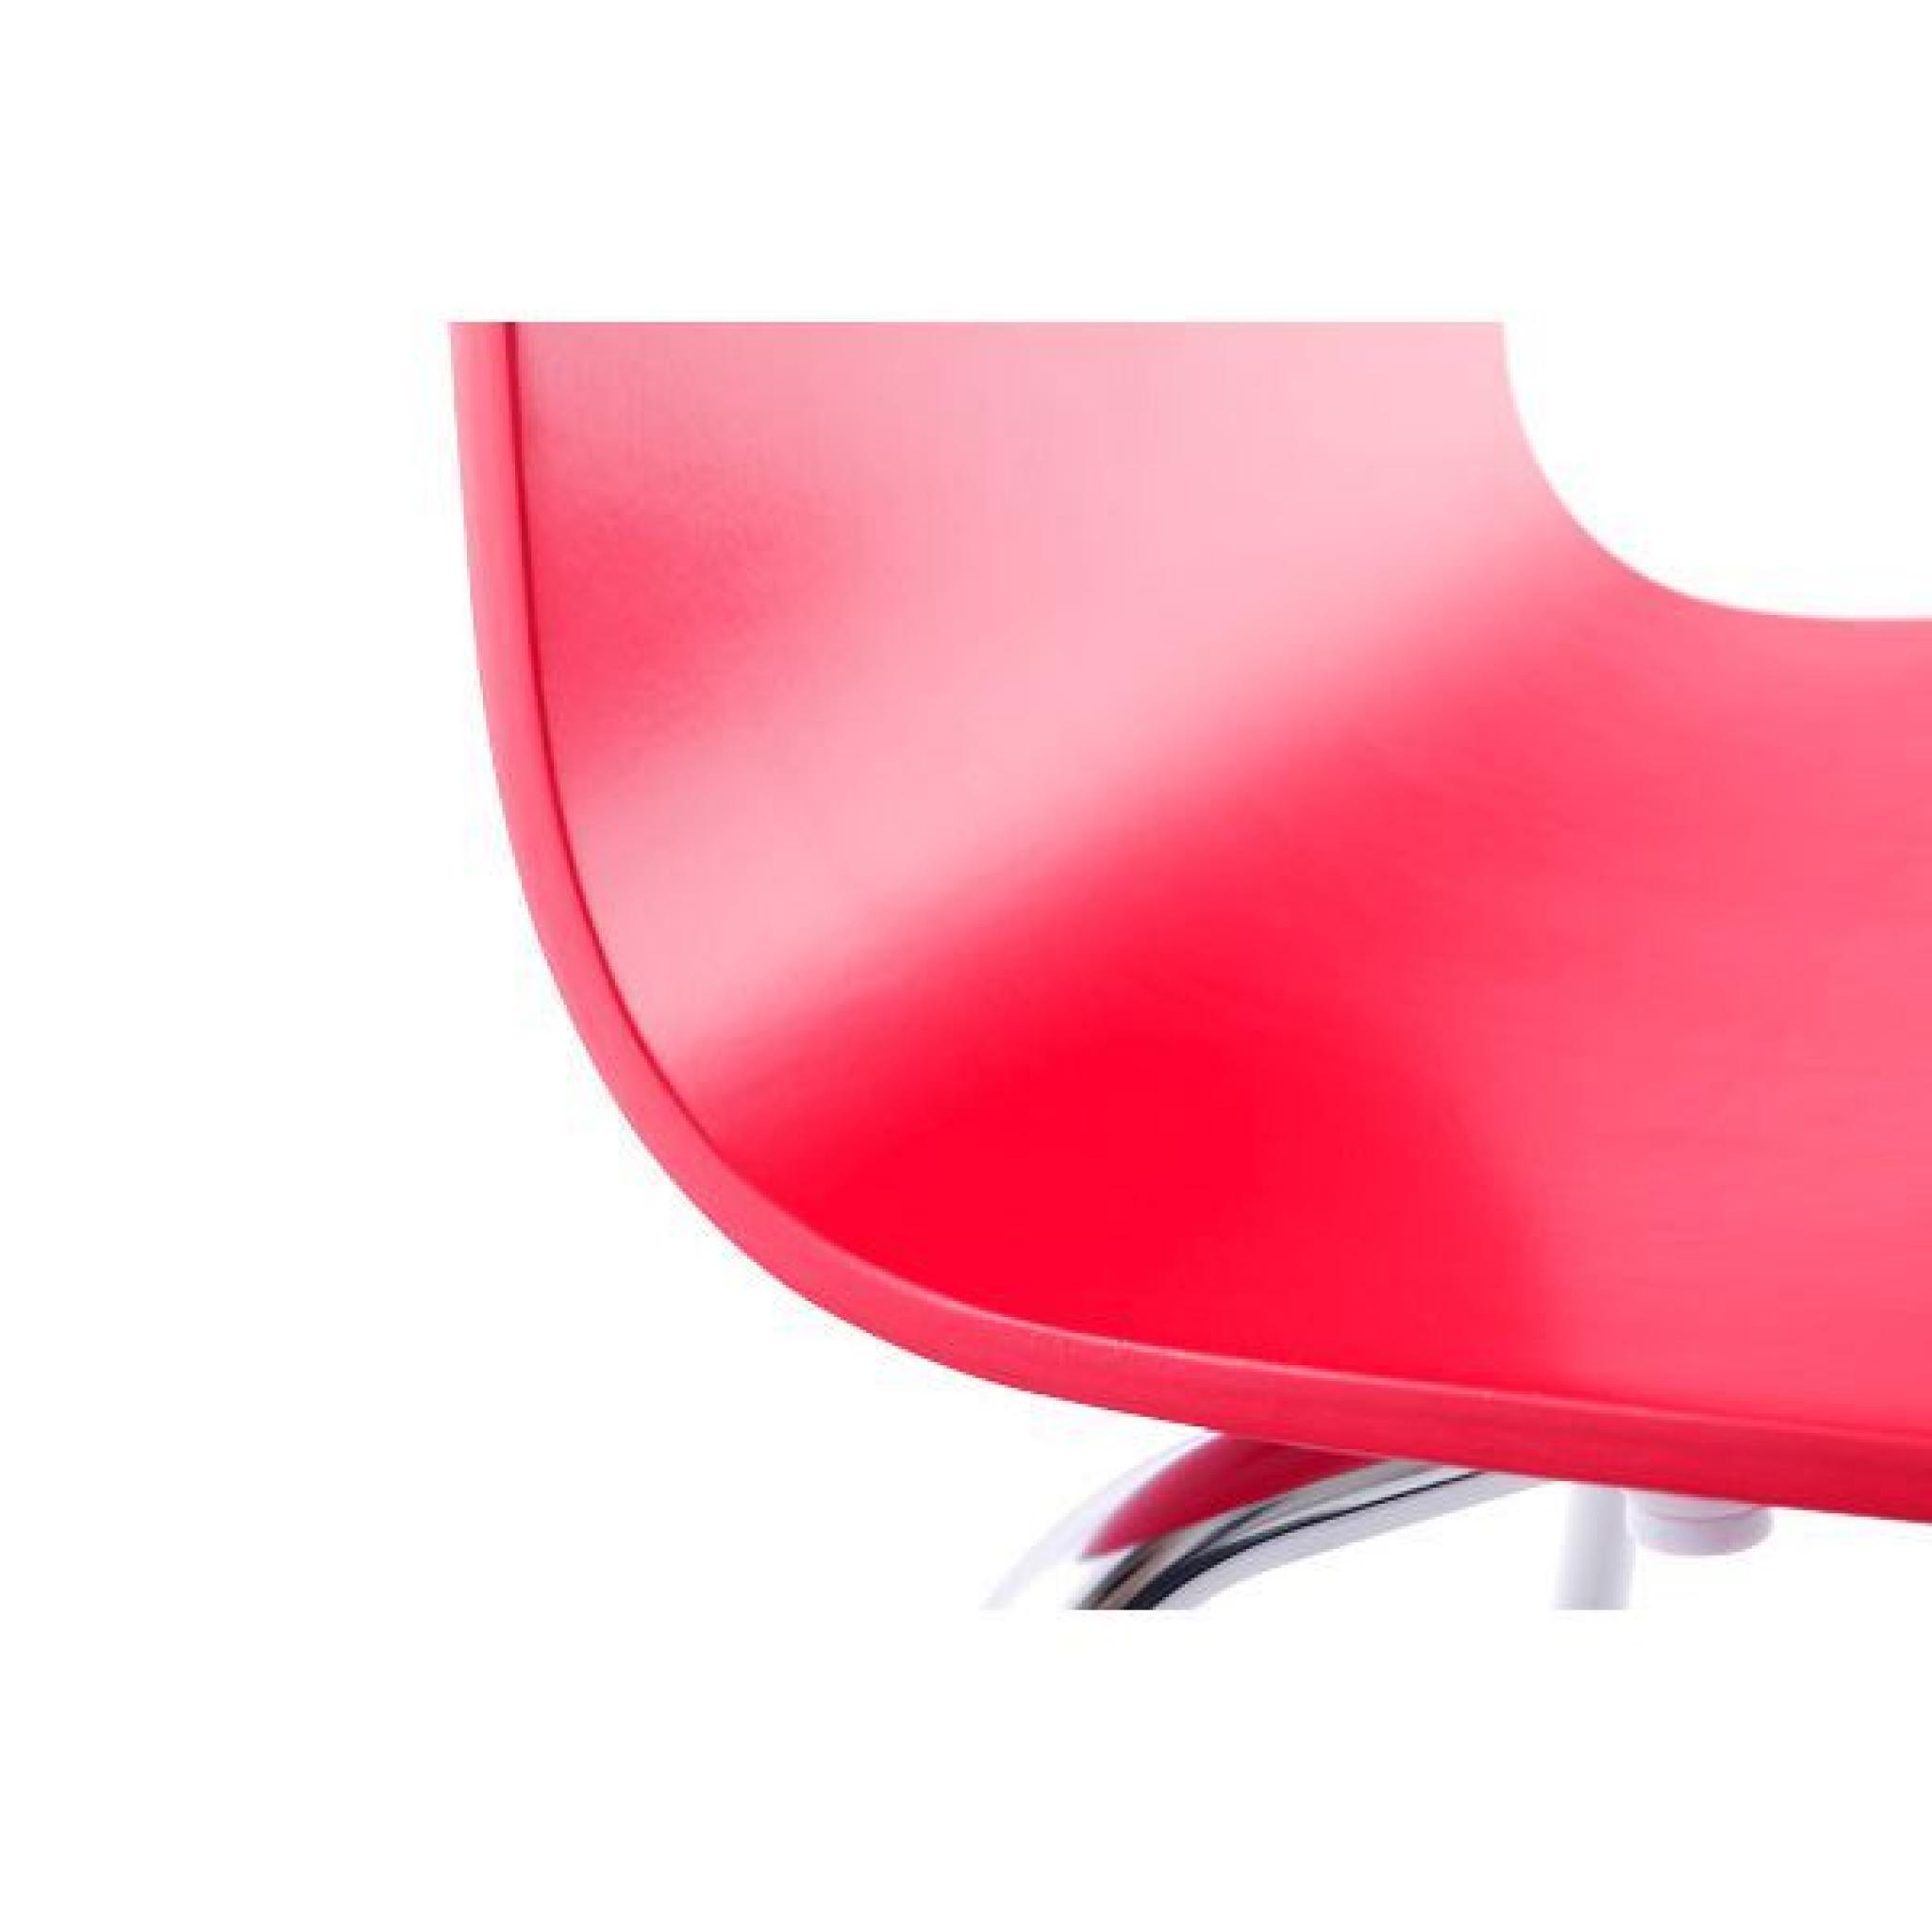 Chaise design Roy - Rouge Lot de 3 pas cher